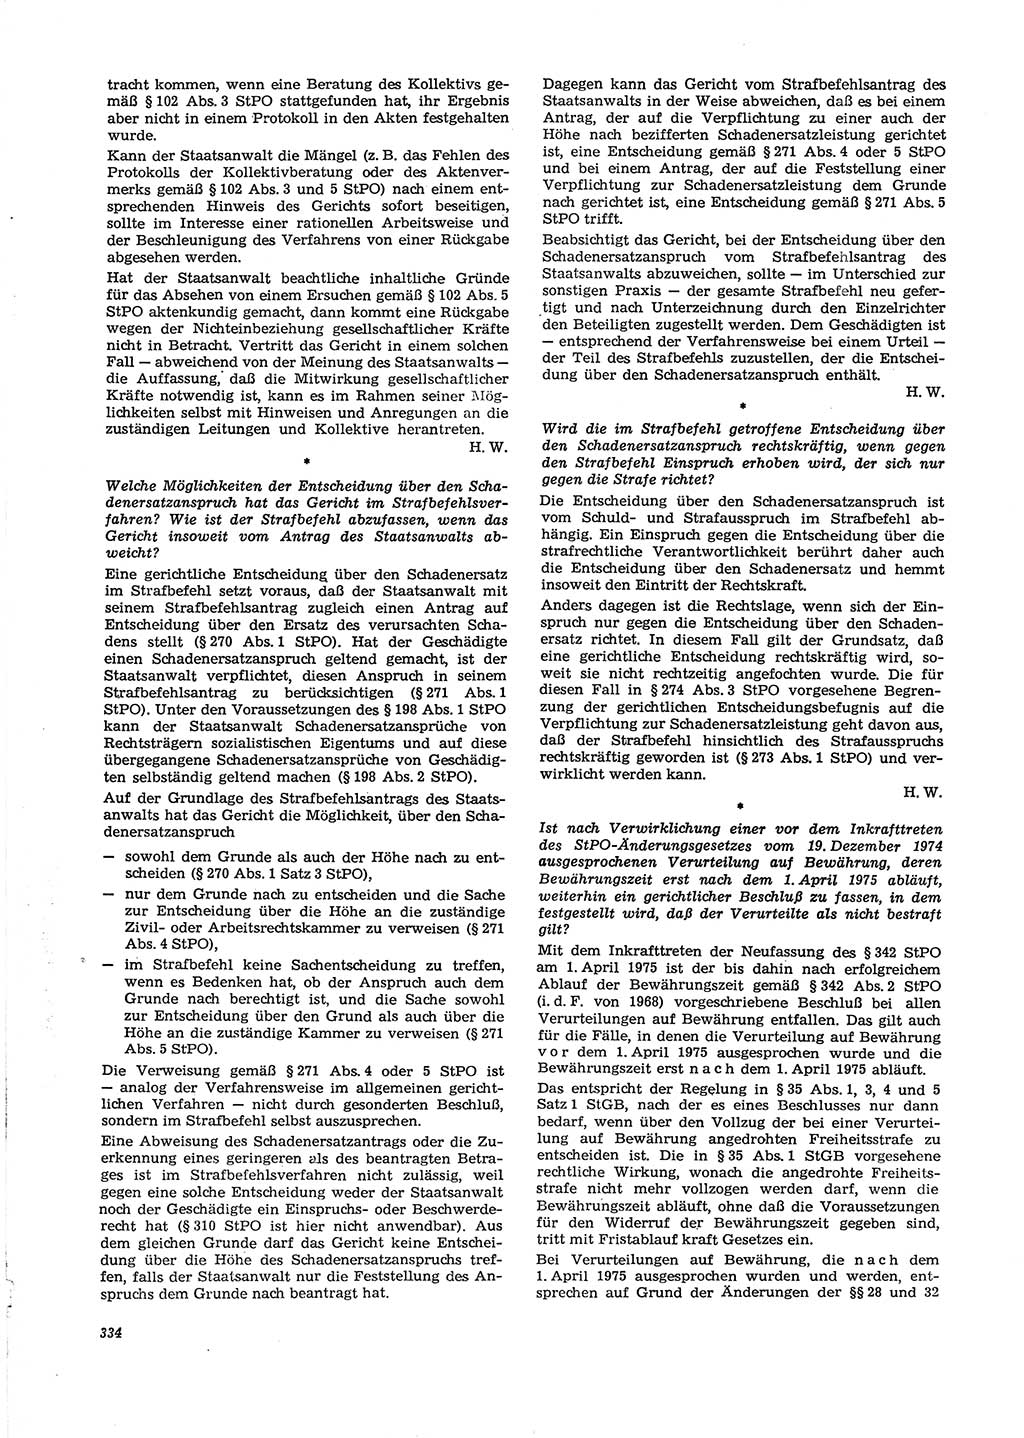 Neue Justiz (NJ), Zeitschrift für Recht und Rechtswissenschaft [Deutsche Demokratische Republik (DDR)], 29. Jahrgang 1975, Seite 334 (NJ DDR 1975, S. 334)